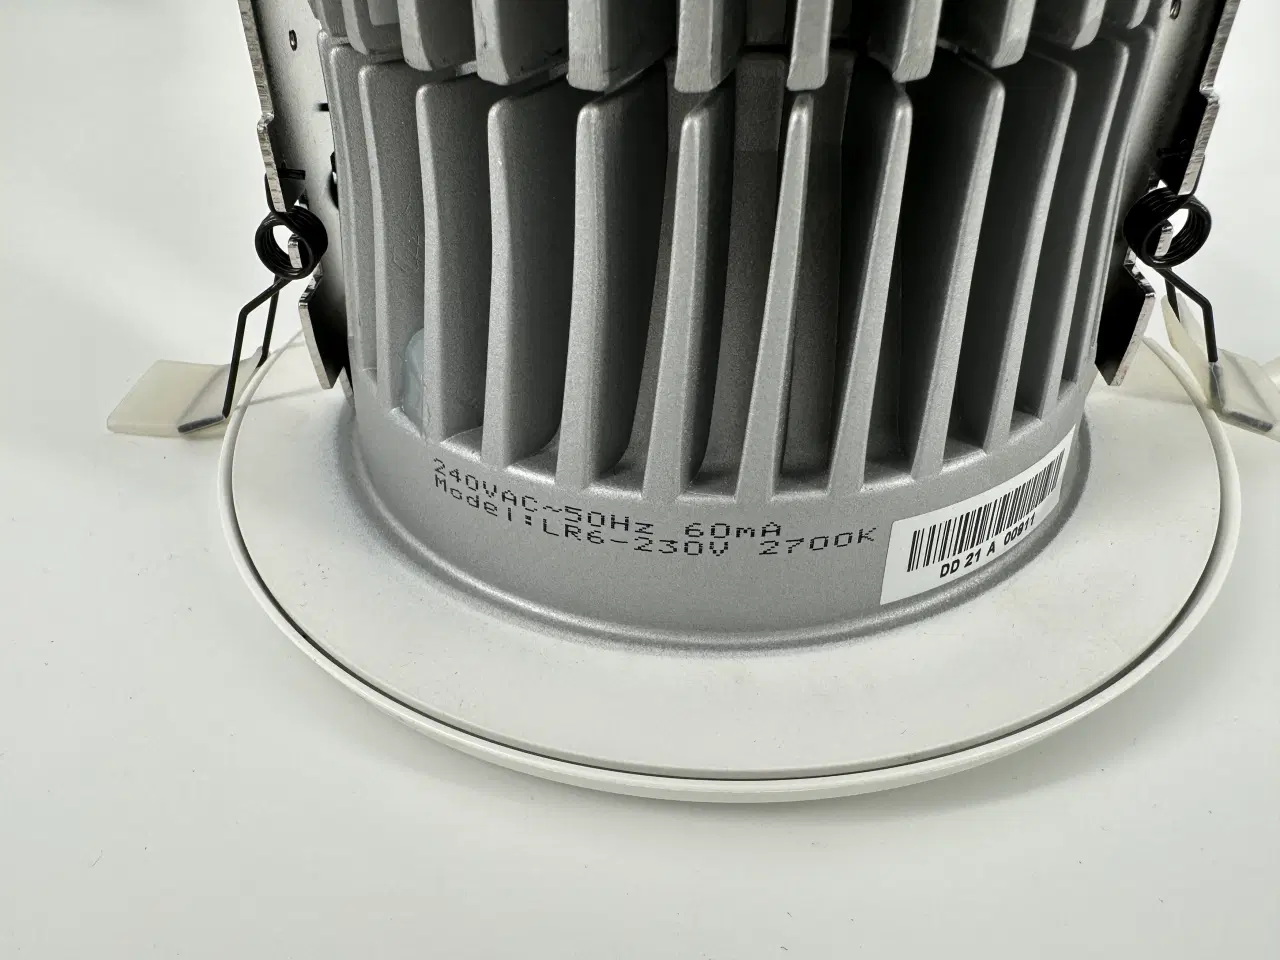 Billede 5 - Thorn lighting base led 650 12w indbygget downlight, hvid